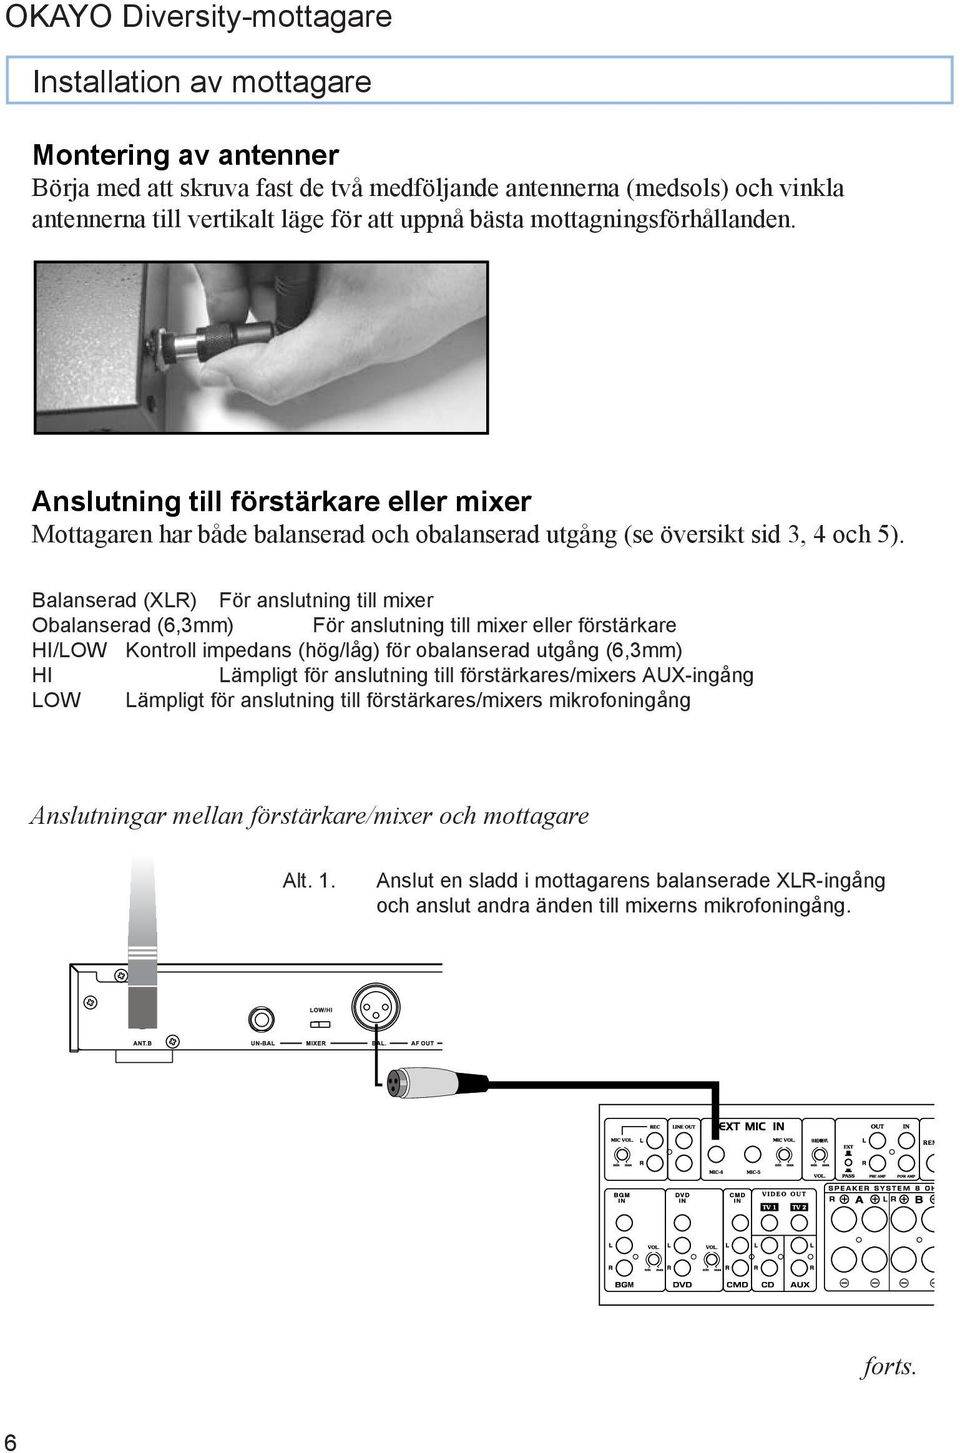 Balanserad (XLR) För anslutning till mixer Obalanserad (6,3mm) För anslutning till mixer eller förstärkare HI/LOW Kontroll impedans (hög/låg) för obalanserad utgång (6,3mm) HI Lämpligt för anslutning